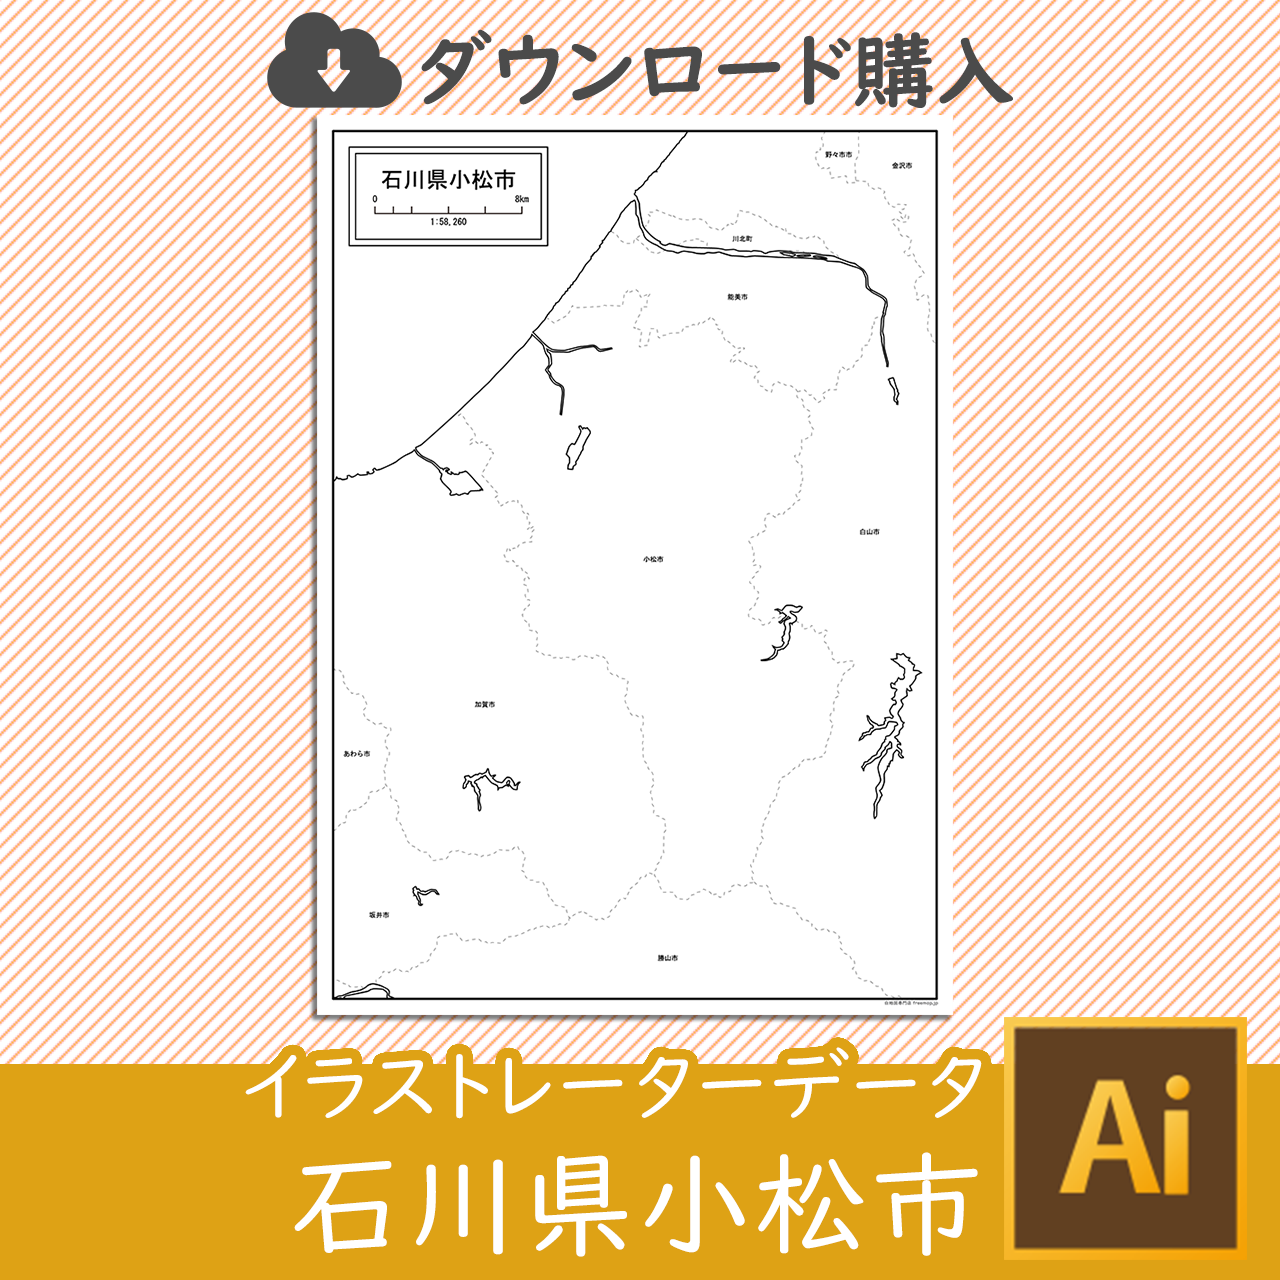 小松市のaiデータのサムネイル画像